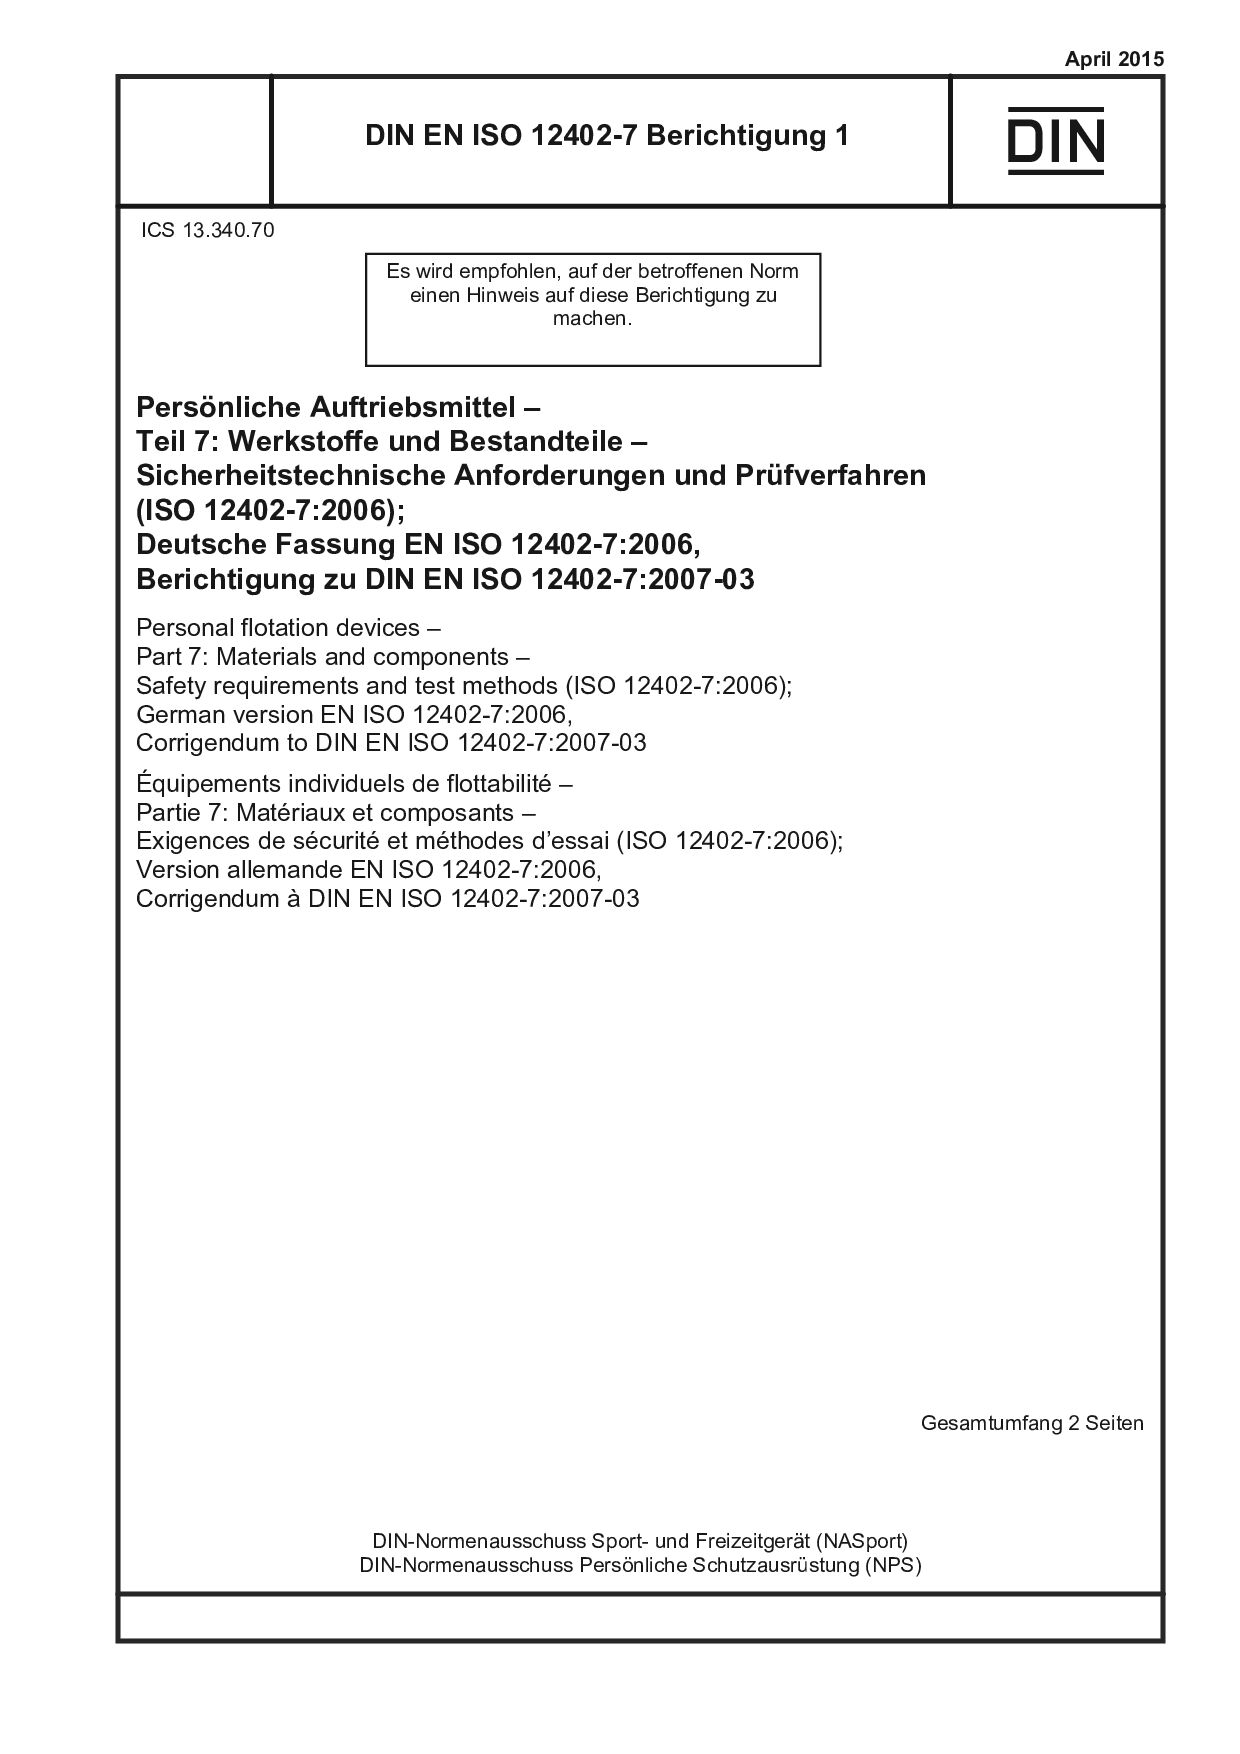 DIN EN ISO 12402-7 Berichtigung 1:2015